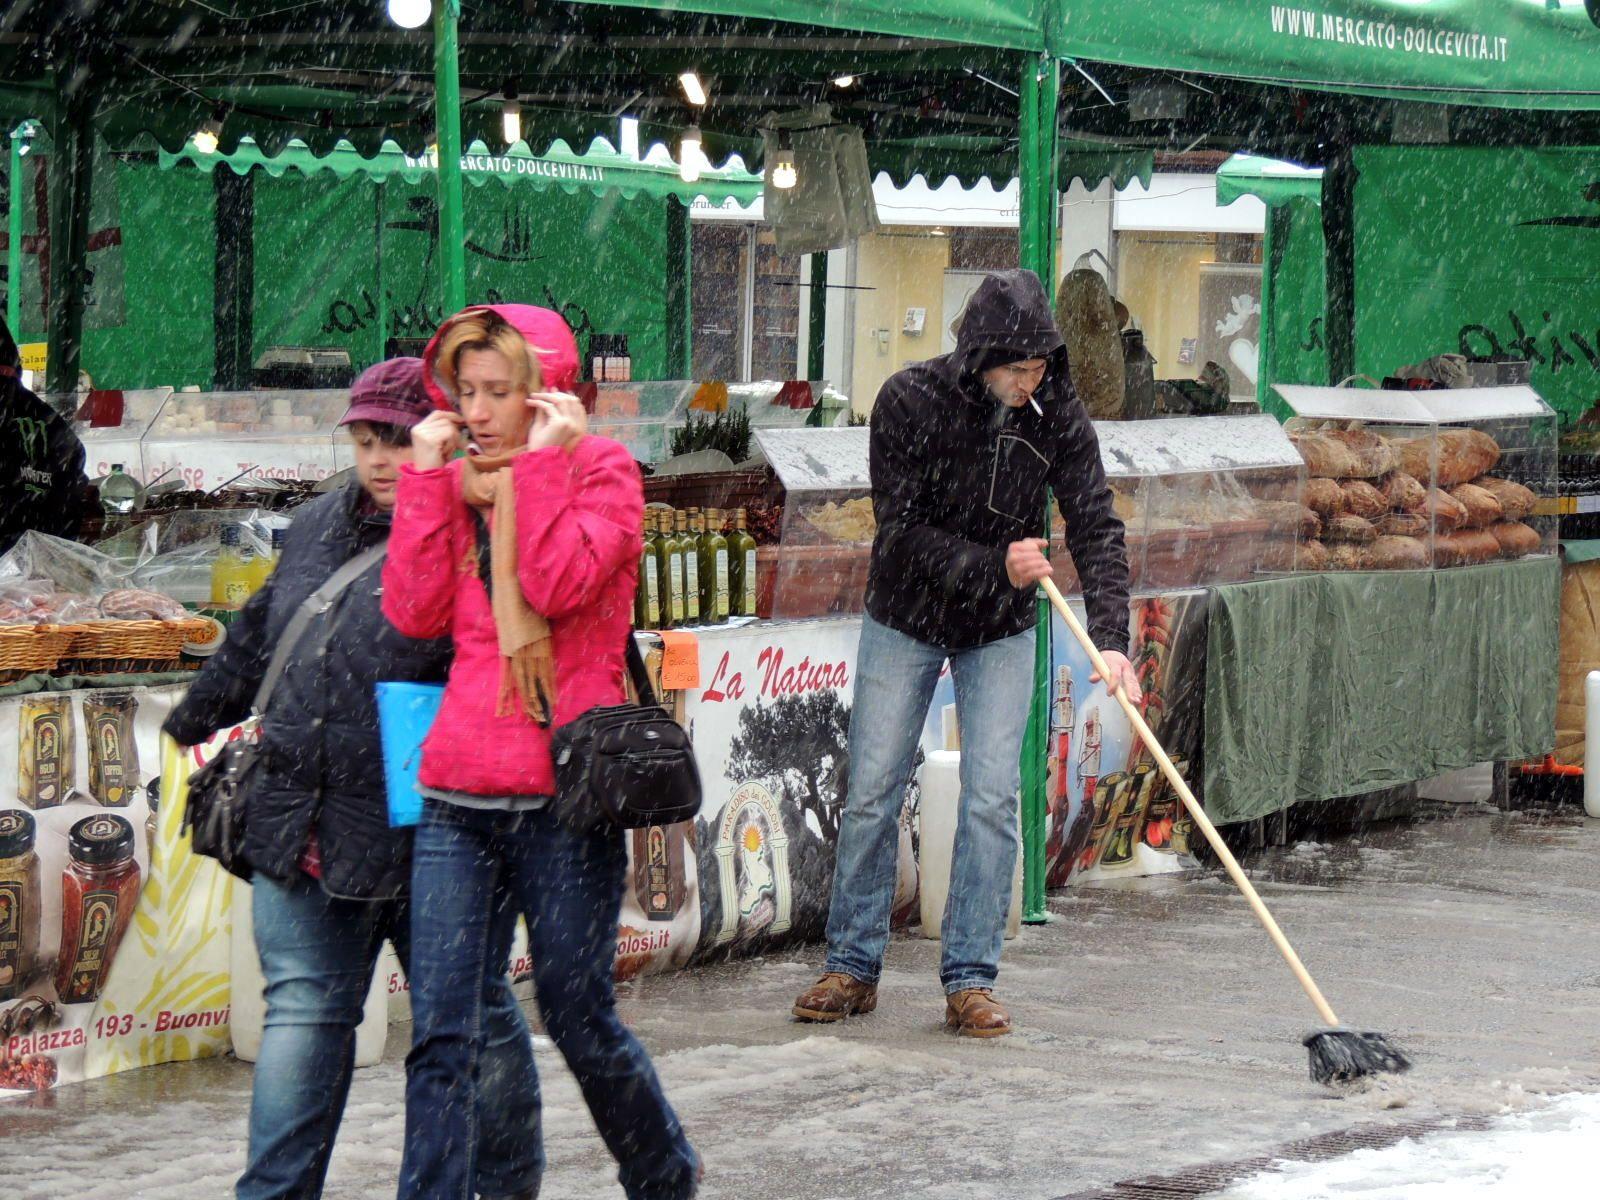 Marktfahrer aus Italien mussten erst mal den Schneematsch vor ihrem Stand wegkehren